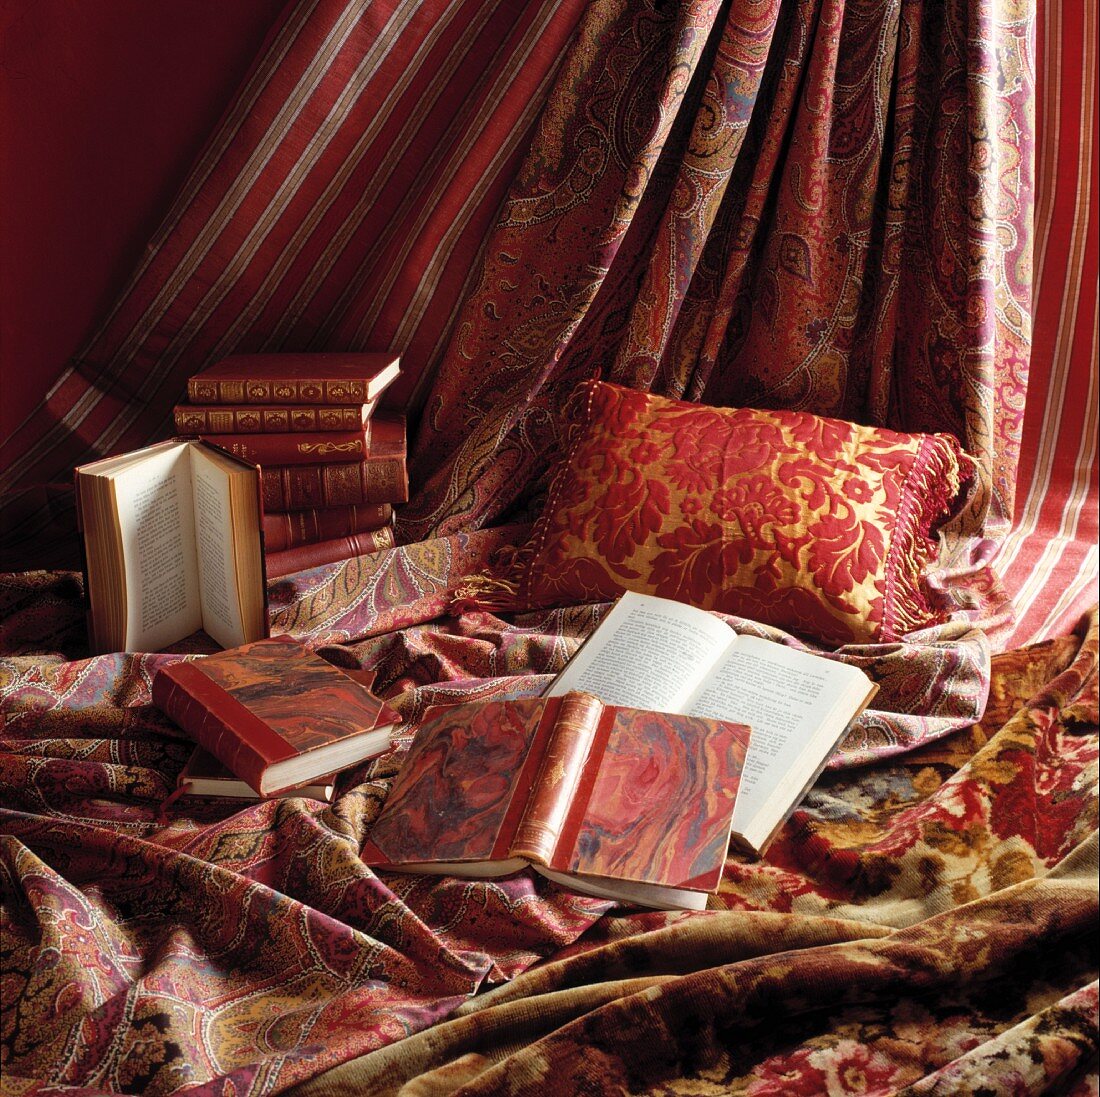 Alte Bücher mit marmoriertem Einband dekorativ drapiert auf rot/rosé und gold gemusterten Kissen und Vorhangstoffen